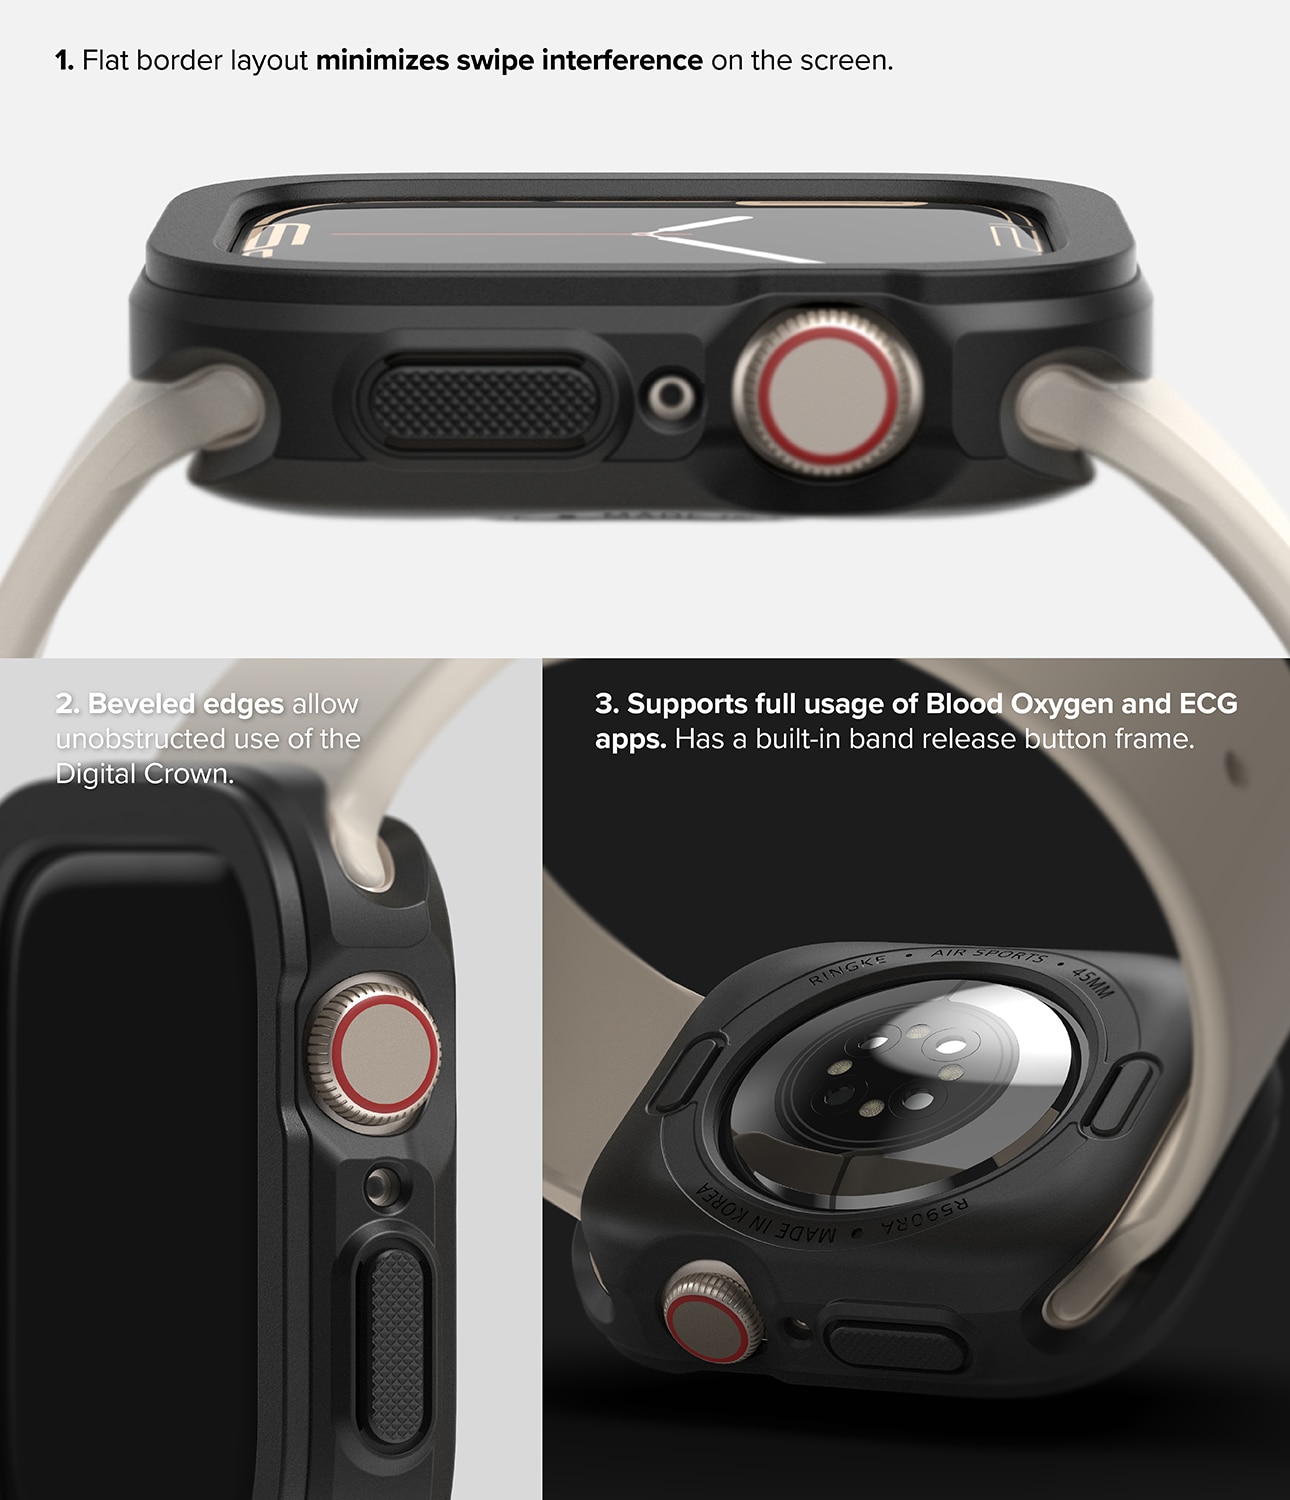 Apple Watch 41mm Series 7 Air Sports skal, svart